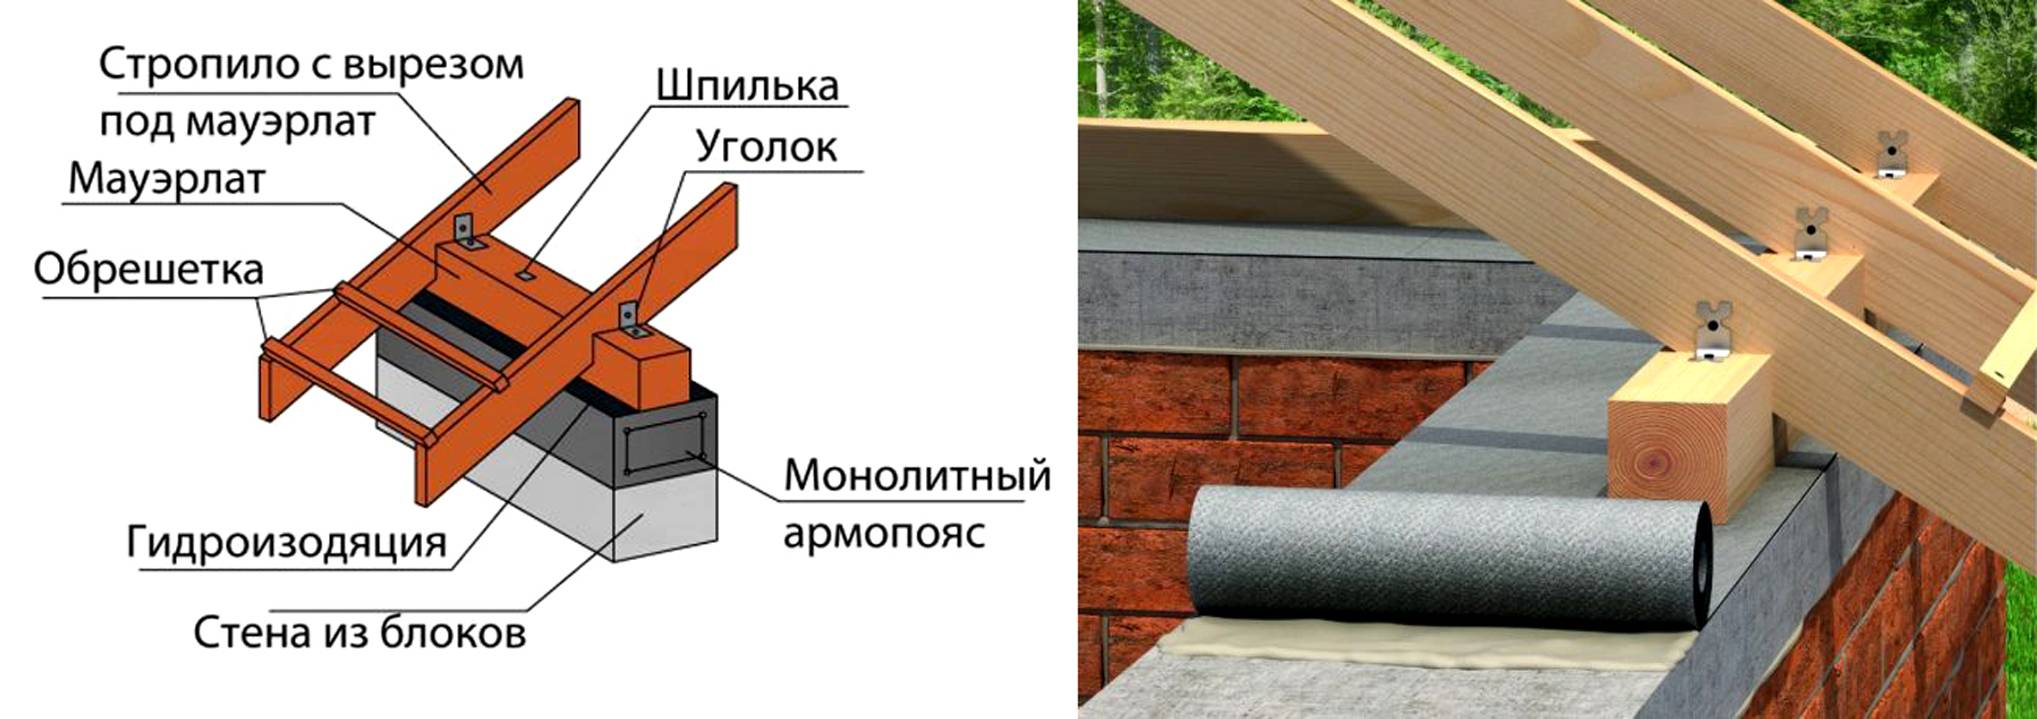 Армопояс для газобетона под мауэрлат: фото, от чего зависит размер, как сделать своими руками в доме под крышу, технология крепления